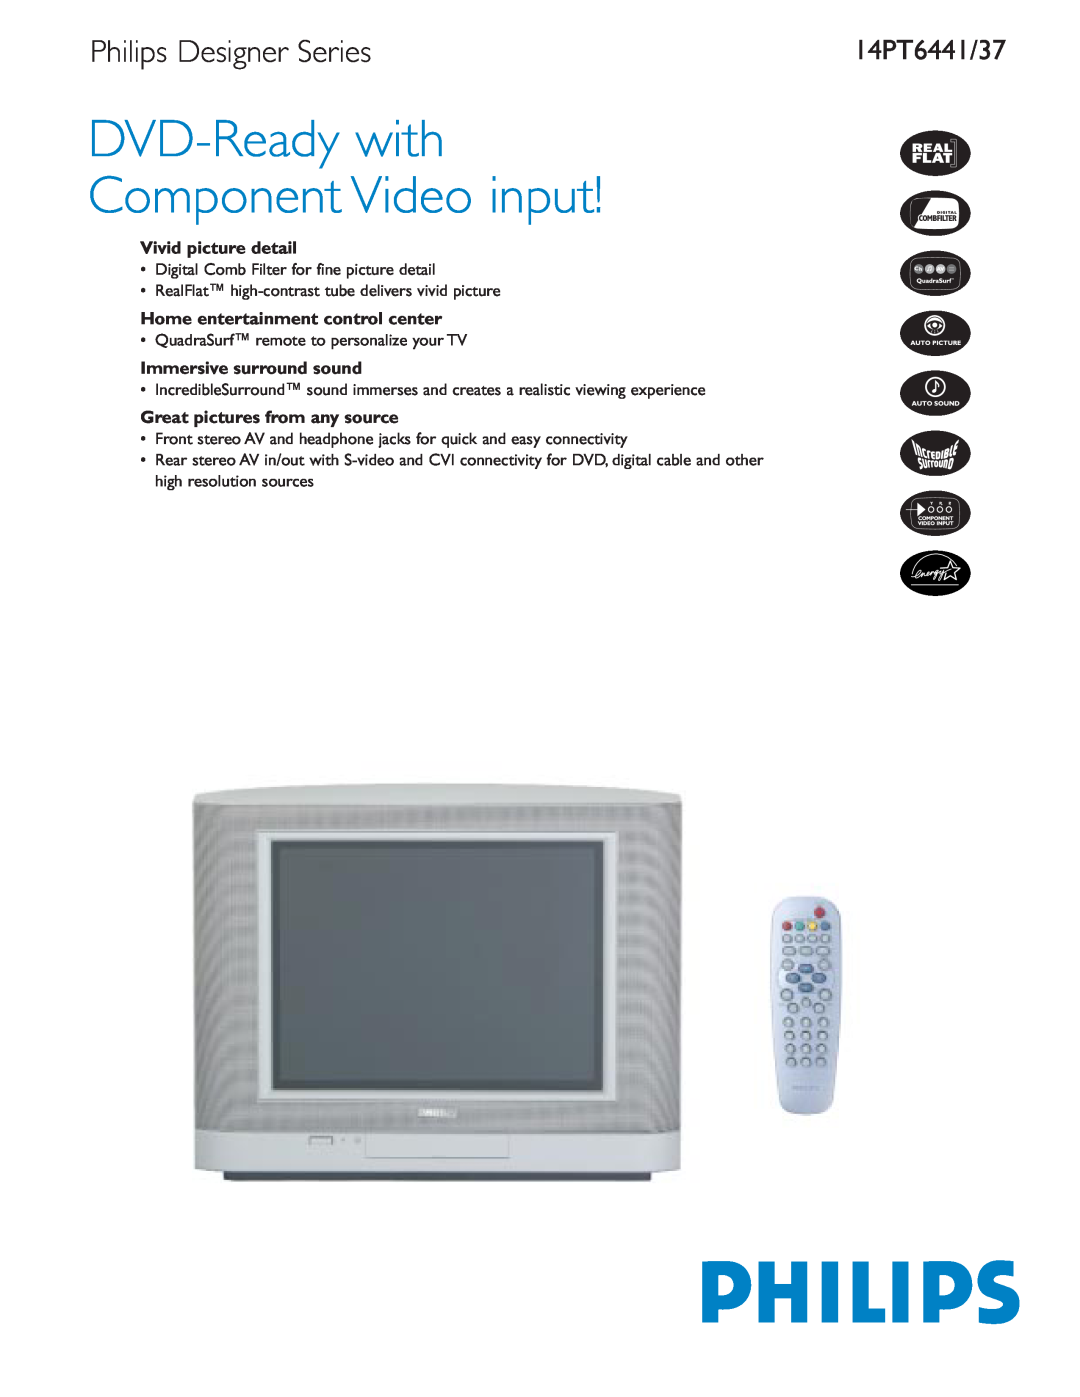 Philips 14PT6437 manual Vivid picture detail, Home entertainment control center, Immersive surround sound, 14PT6441/37 